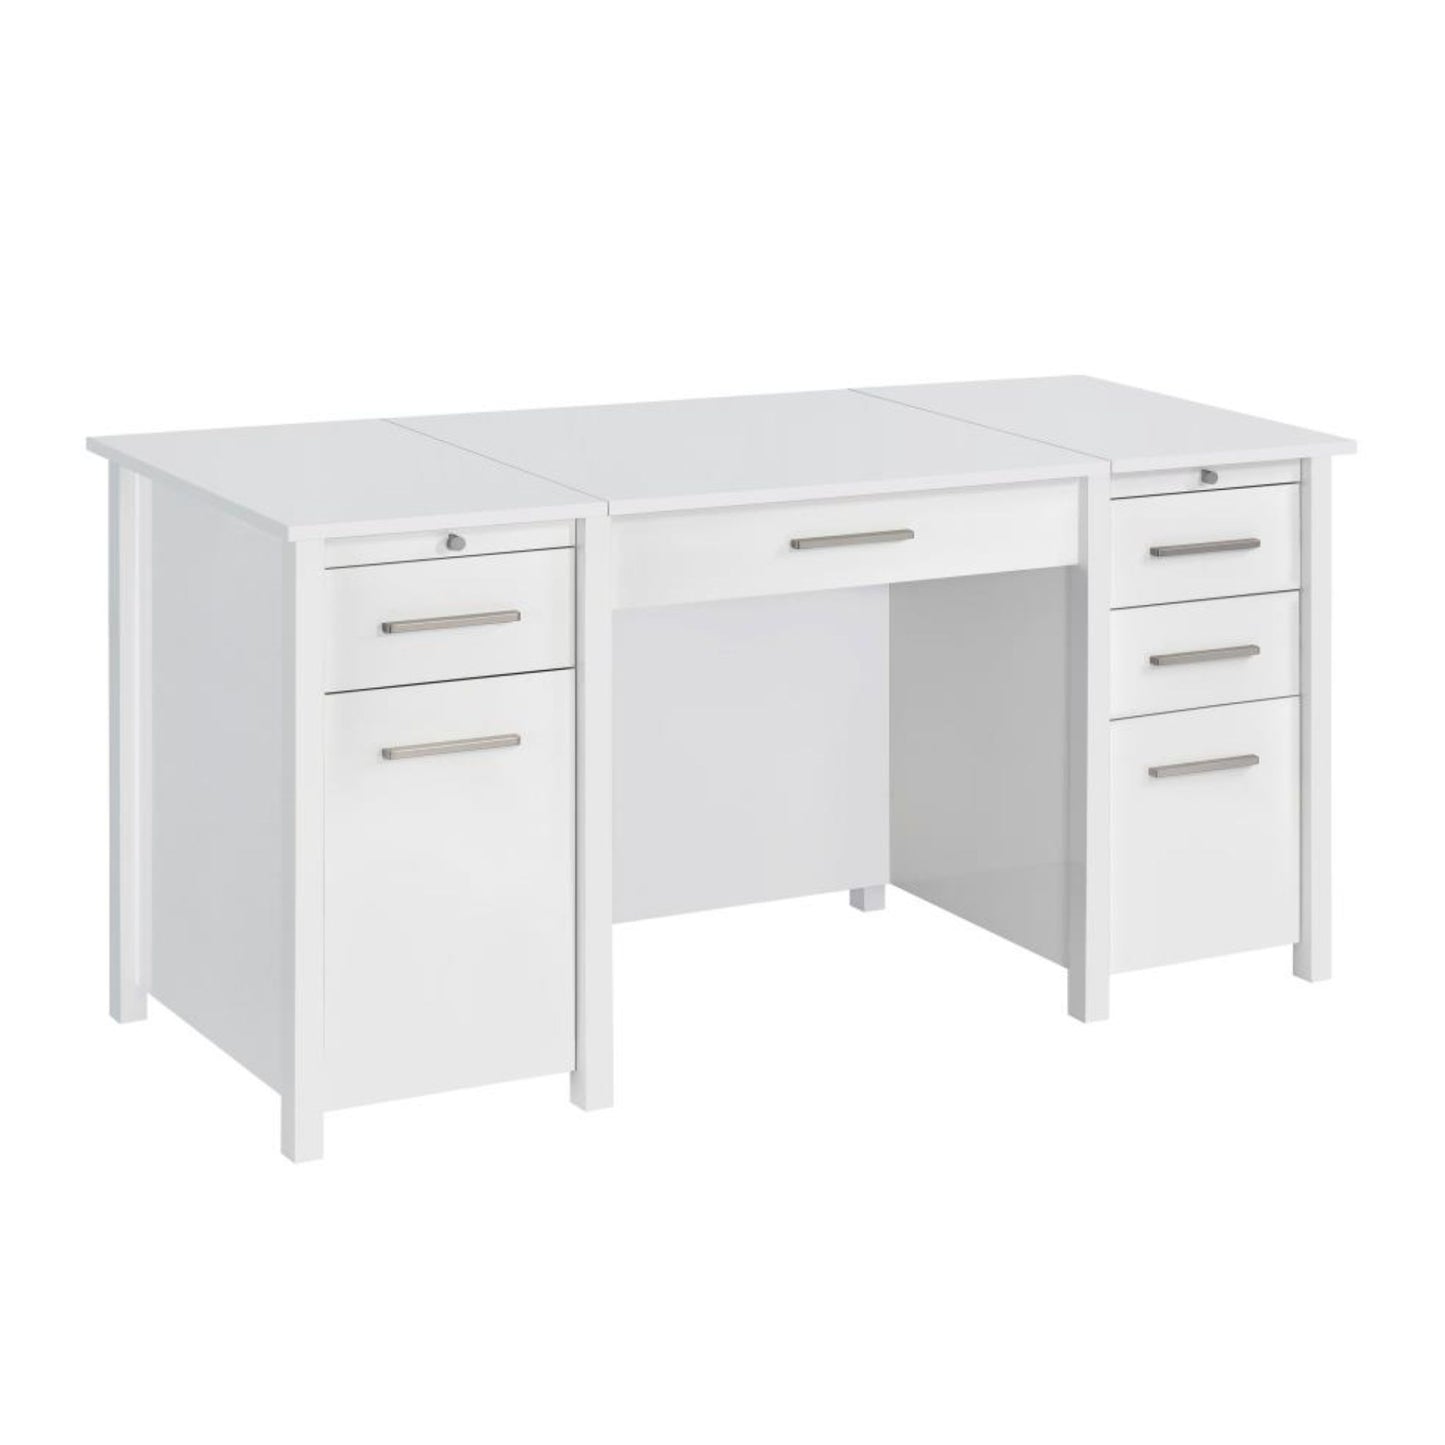 DYLAN 4-drawer Lift Top Office Desk White